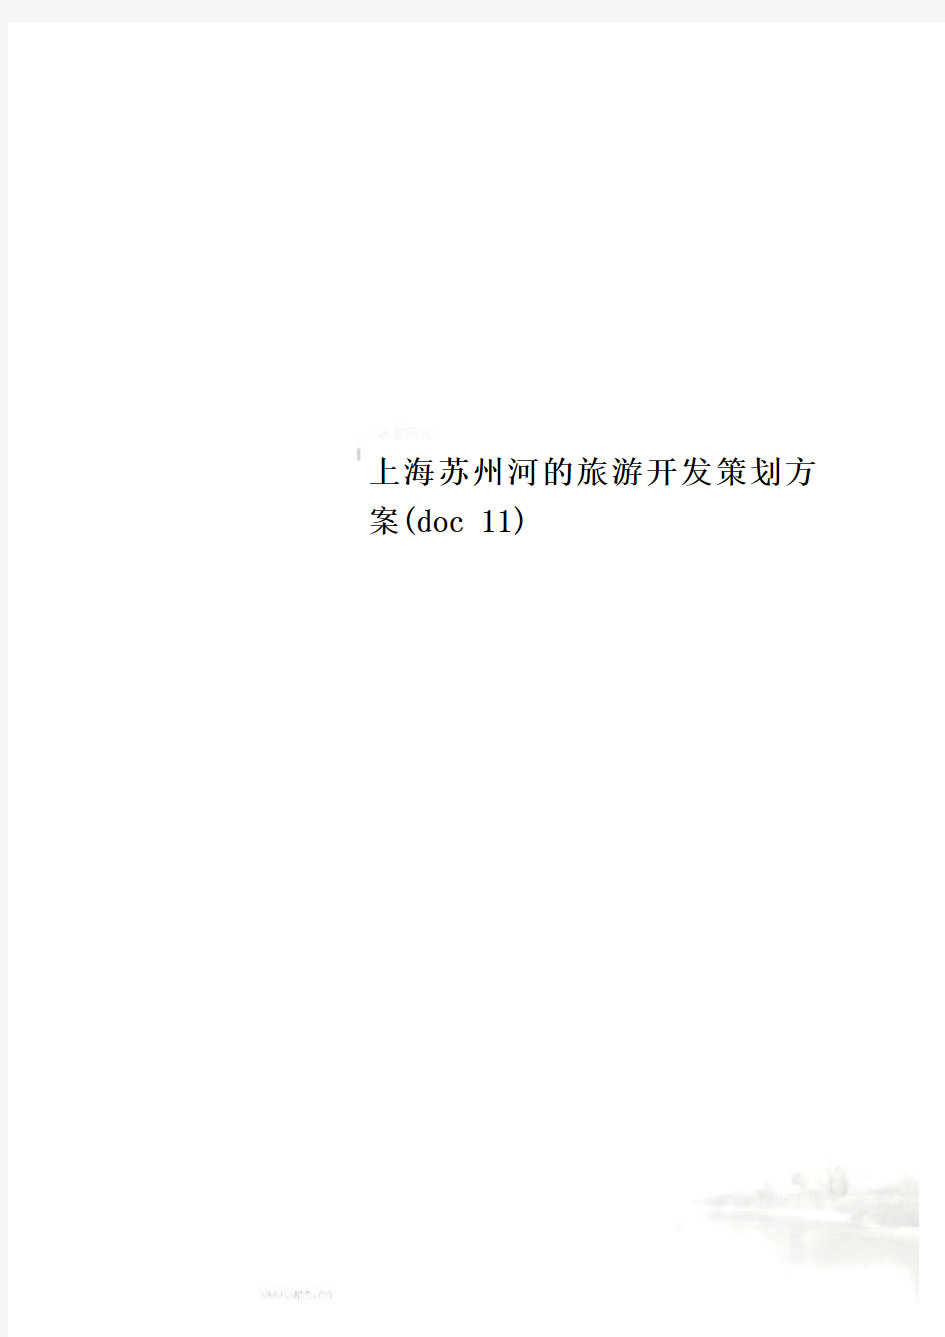 上海苏州河的旅游开发策划方案(doc 11)